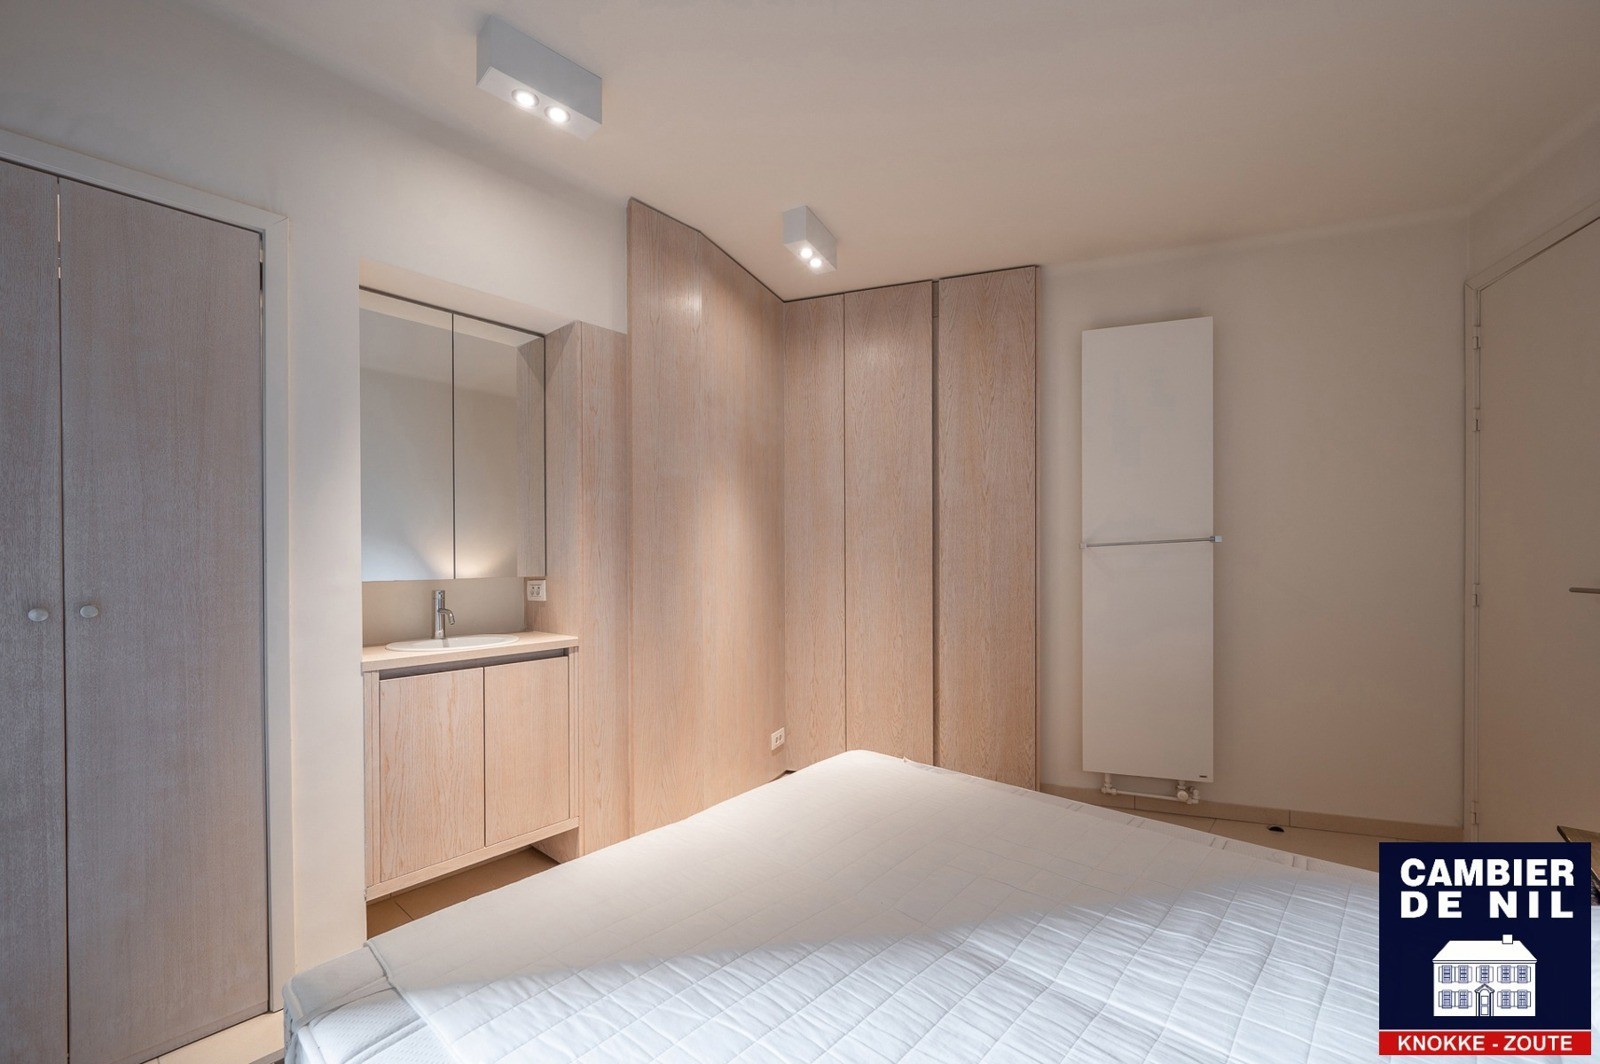 MEUBLÉ : Appartement spacieux avec vue mer et 4 chambres à coucher à Duinbergen ! 11